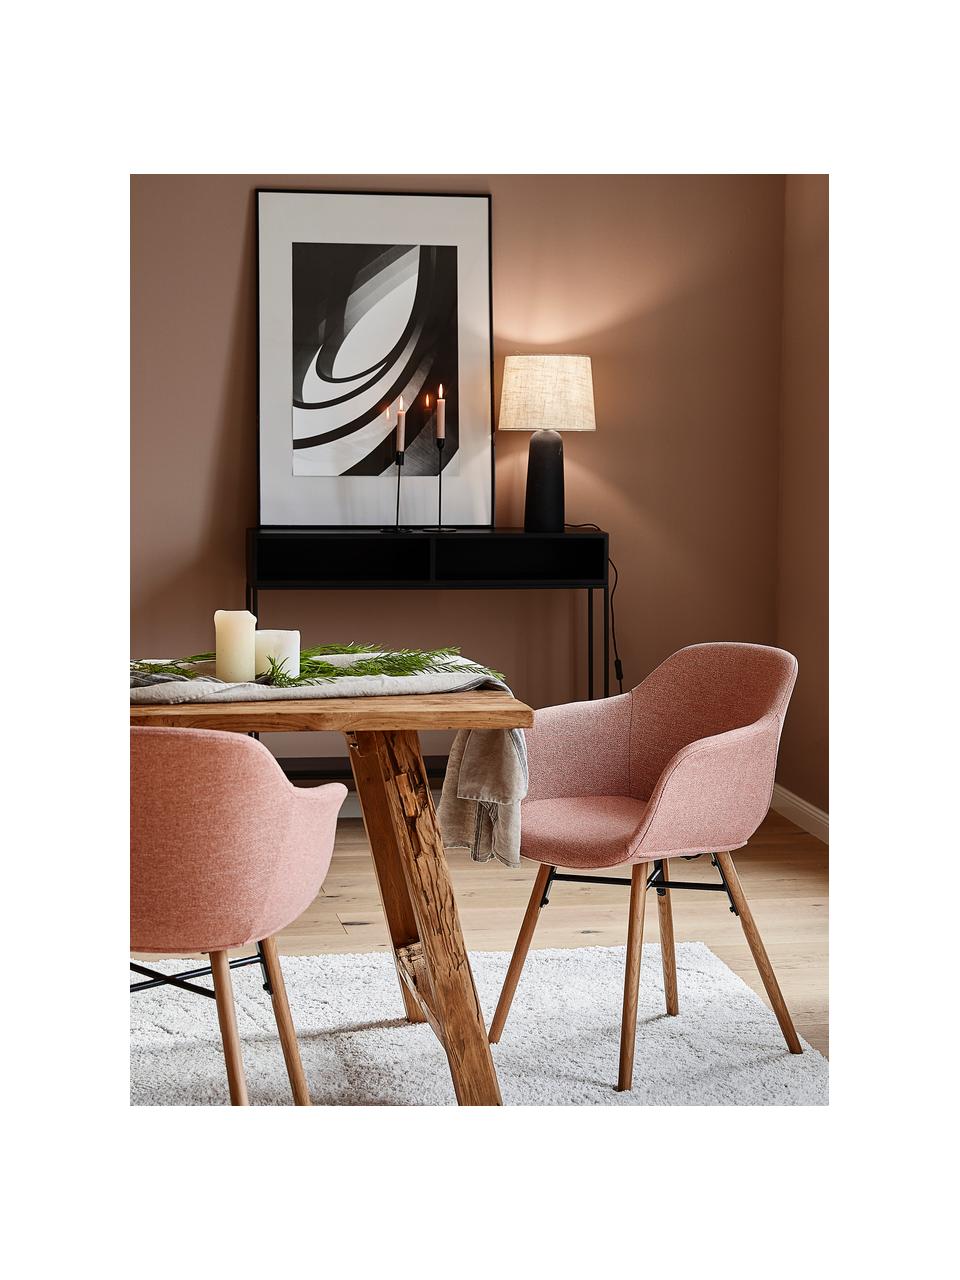 Armlehnstuhl Fiji mit schmaler Sitzschale, Bezug: Polyester Der hochwertige, Beine: Massives Eichenholz, Webstoff Rosa, B 59 x T 55 cm